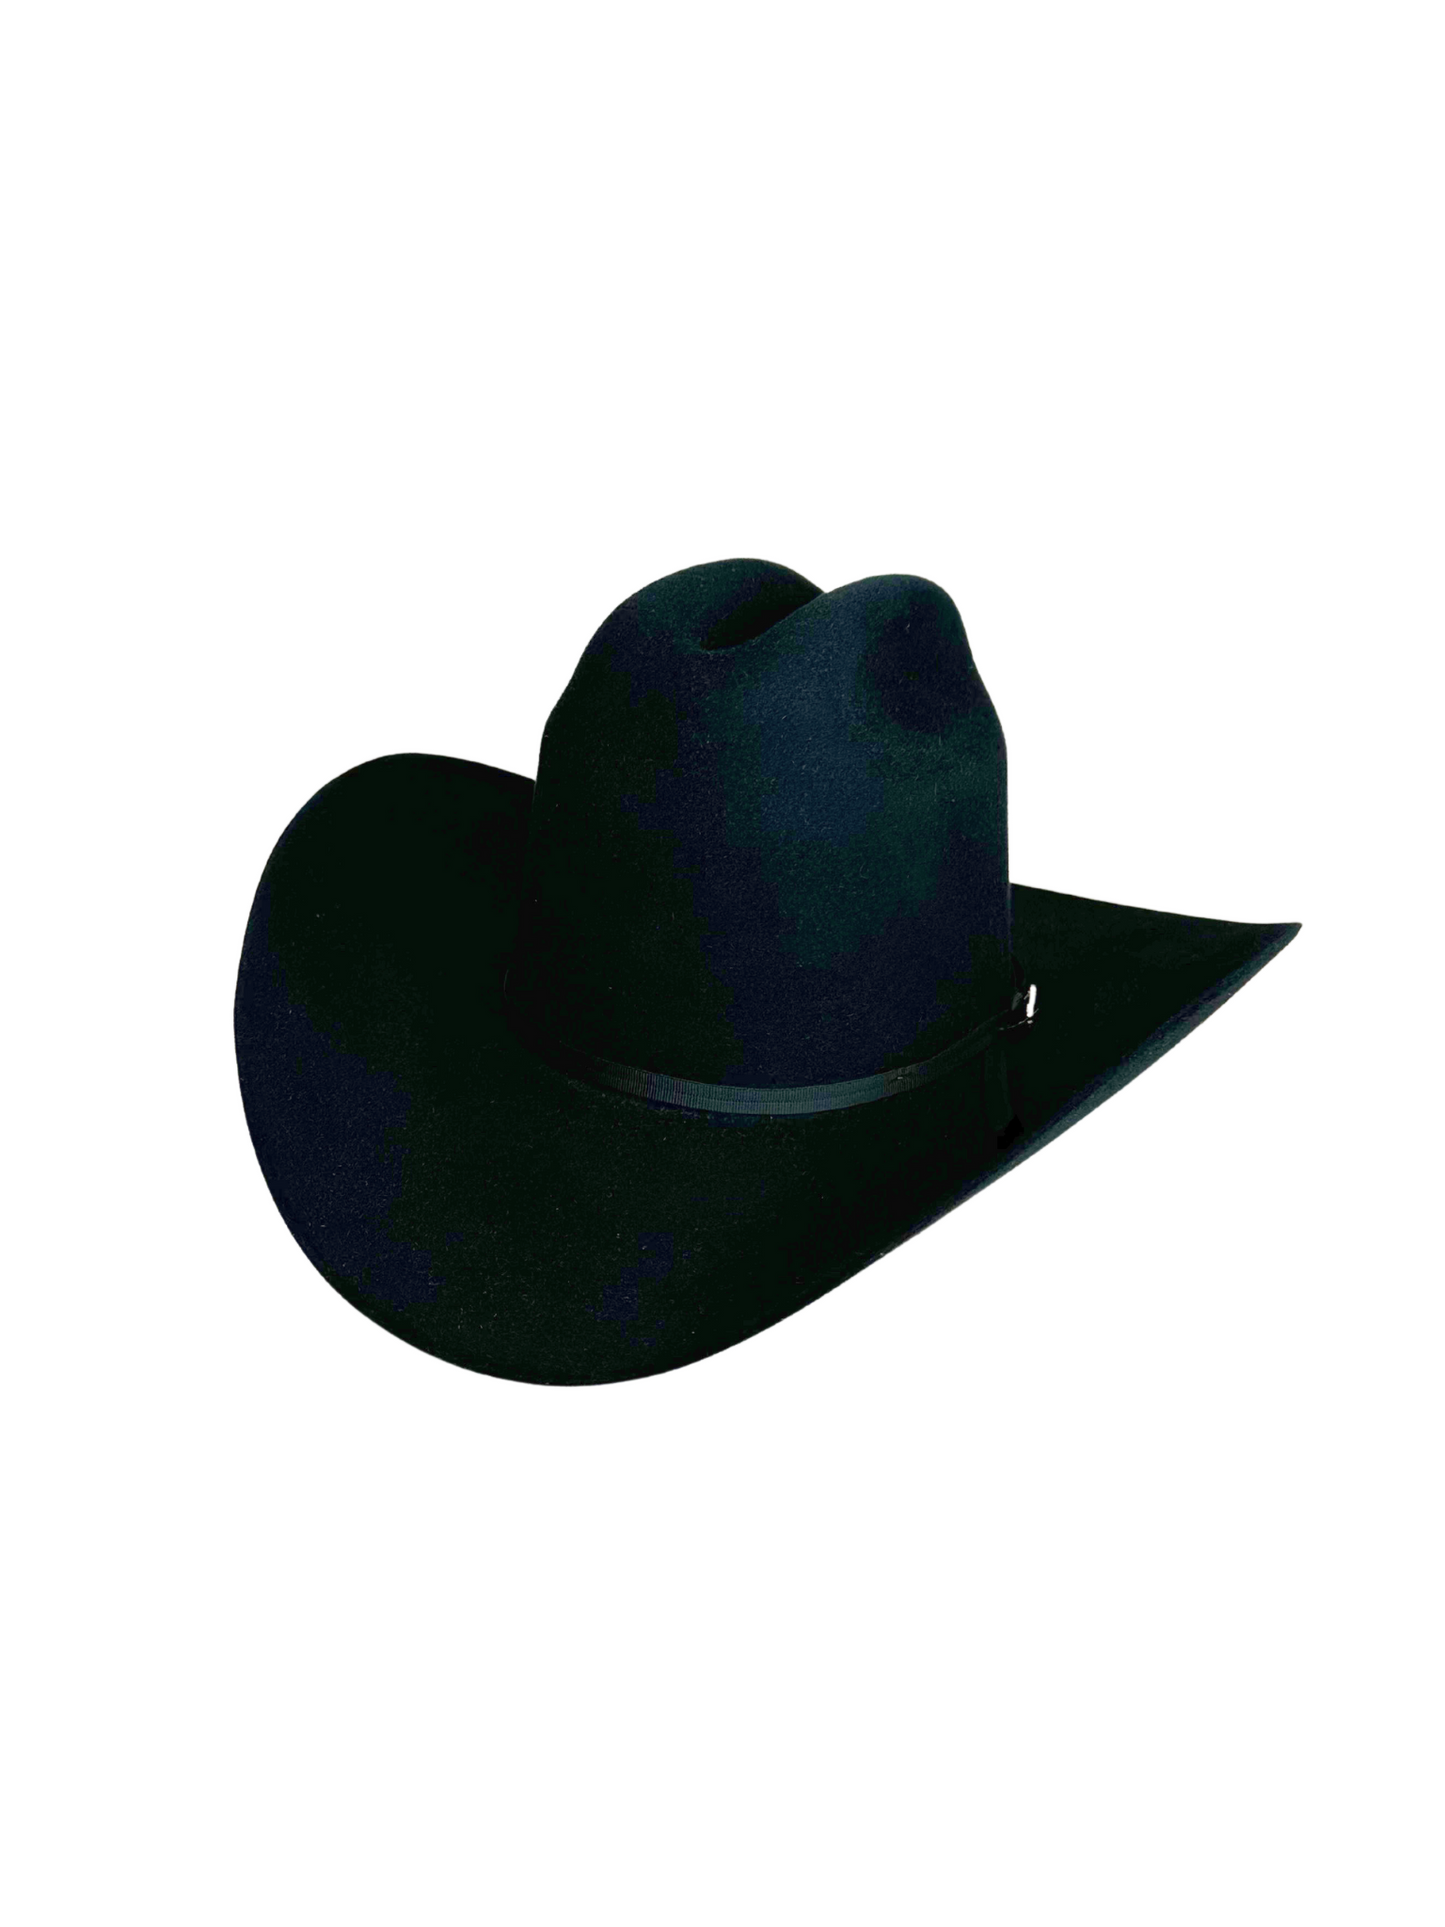 Stetson Rancher 6X Cowboy Hat - Black